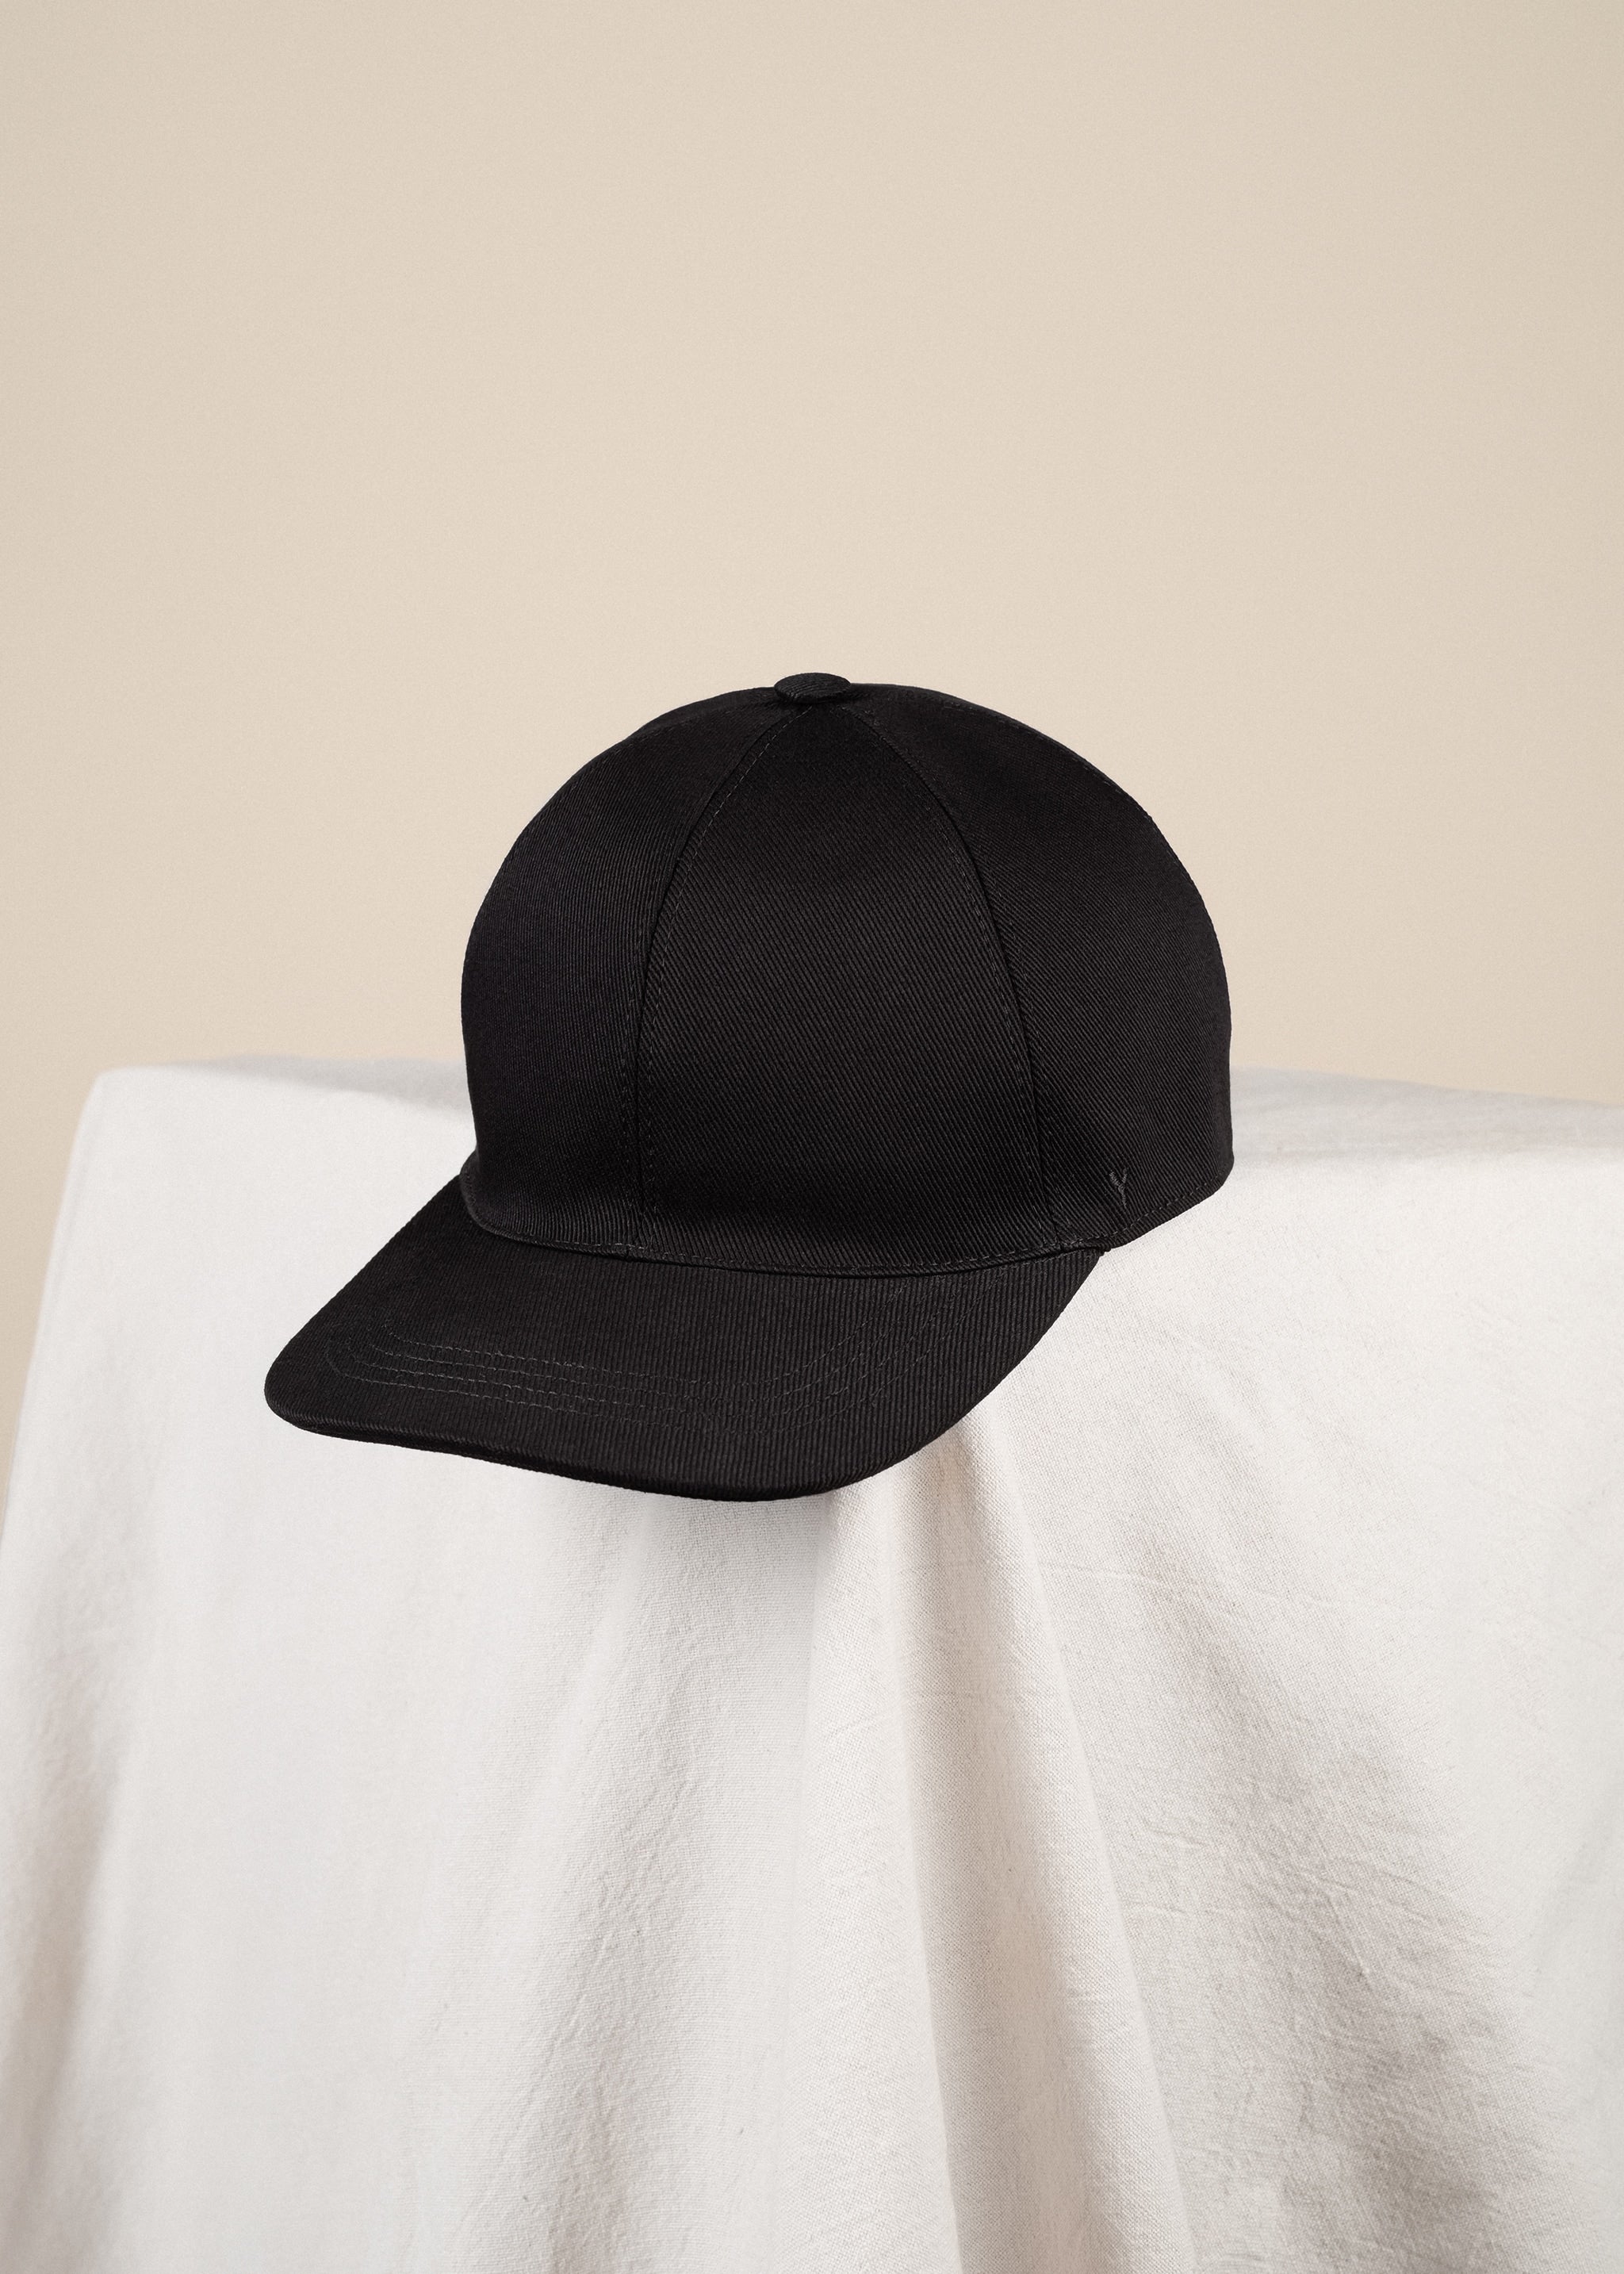 Yacaia Y-0001 Baseball Cap - Black (Cotton twill)